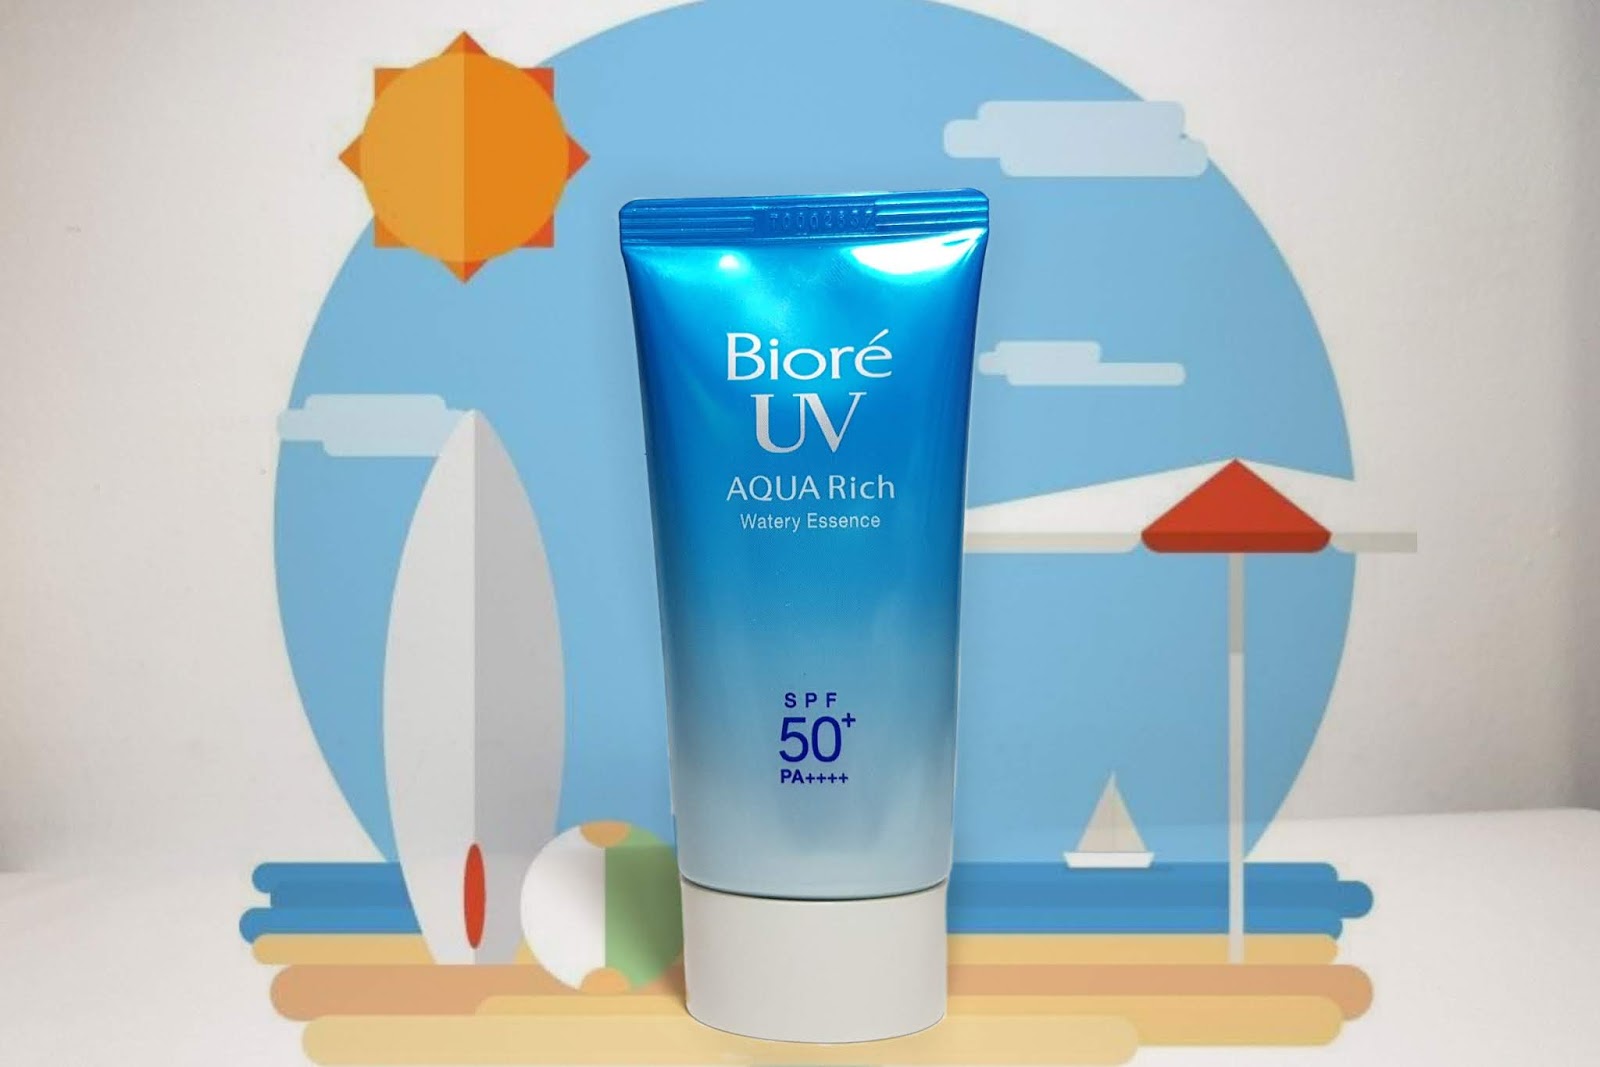 Biore - UV Aqua Rich spf50+ pa+++. Biore UV spf50+ до жирной кожи. Biore Aqua Rich Swatch. Biore uv aqua rich spf 50